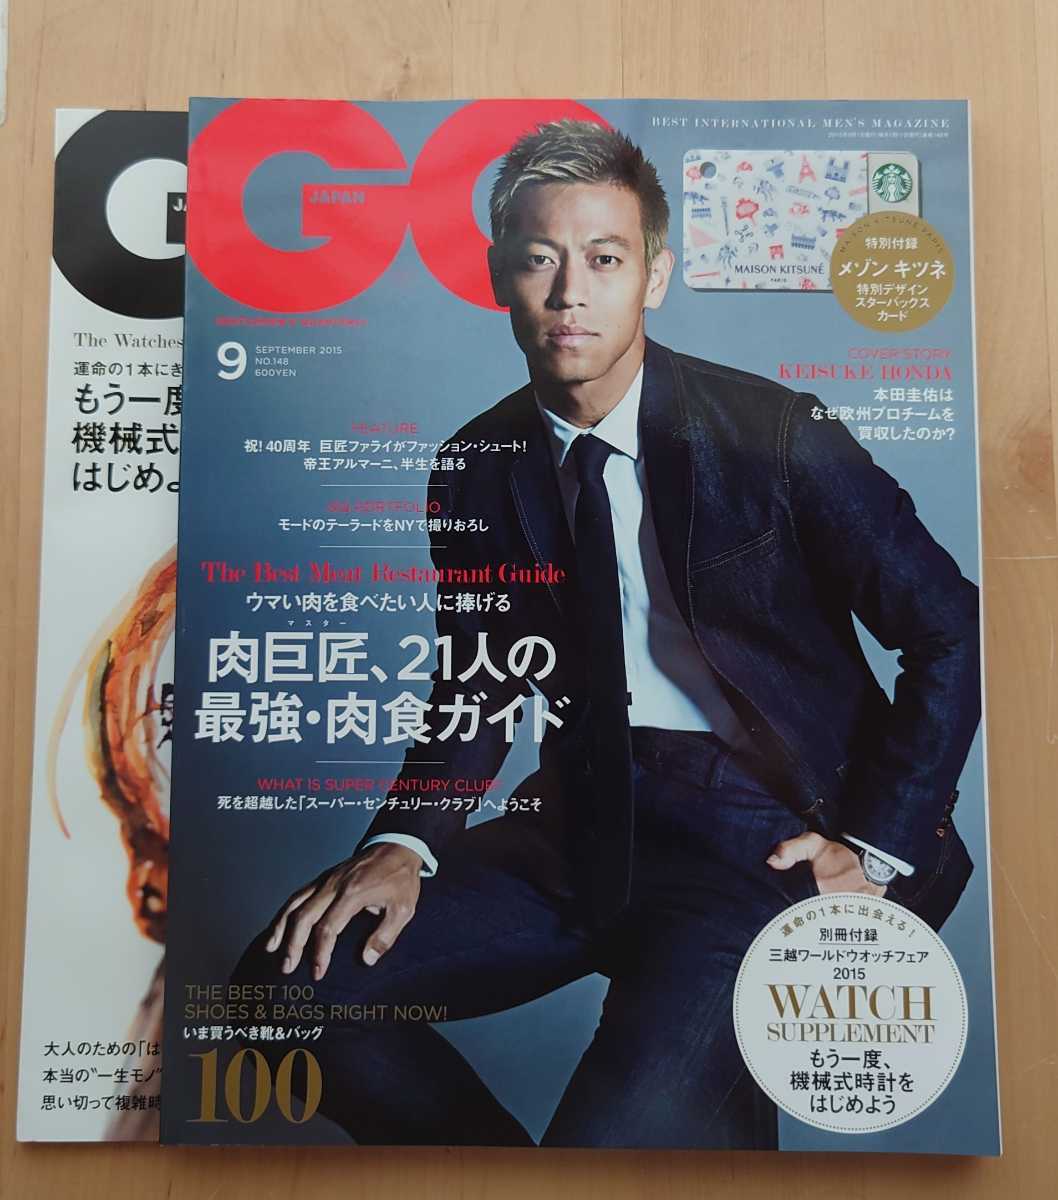 新規購入 GQ Japan 2015年11月号 三浦春馬さん掲載 confmax.com.br